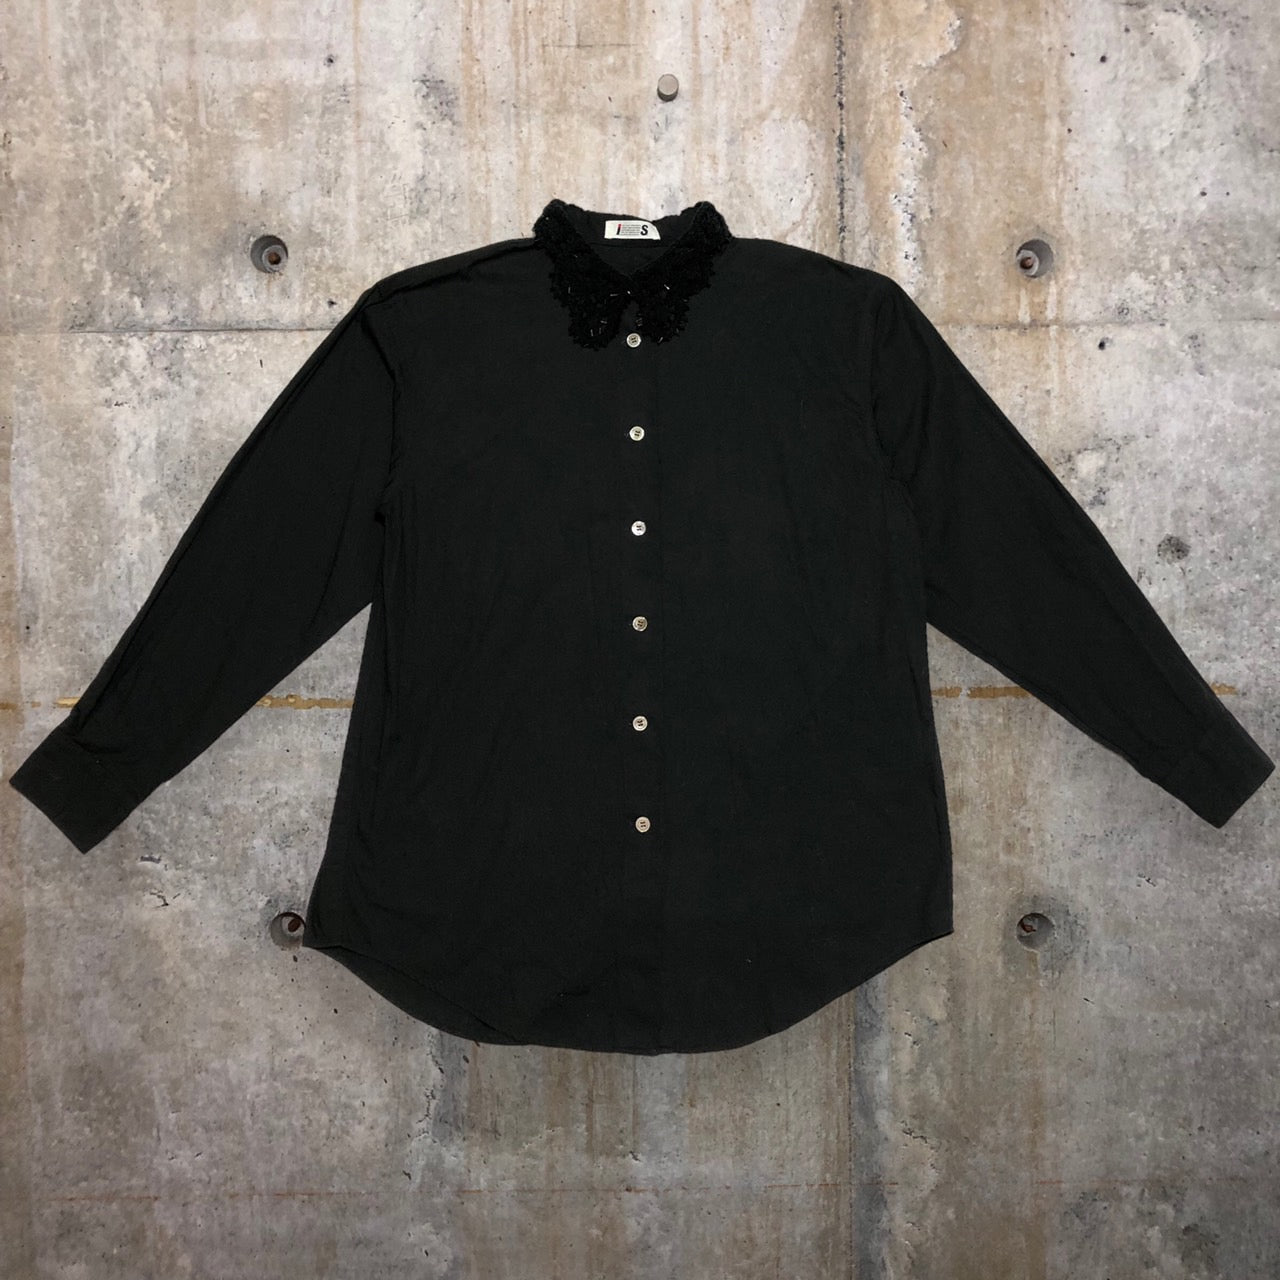 i.s. ISSEY MIYAKE(アイエス イッセイミヤケ) 90’s ビジューカラーワイドシャツ IS24-FJ001 M ブラック